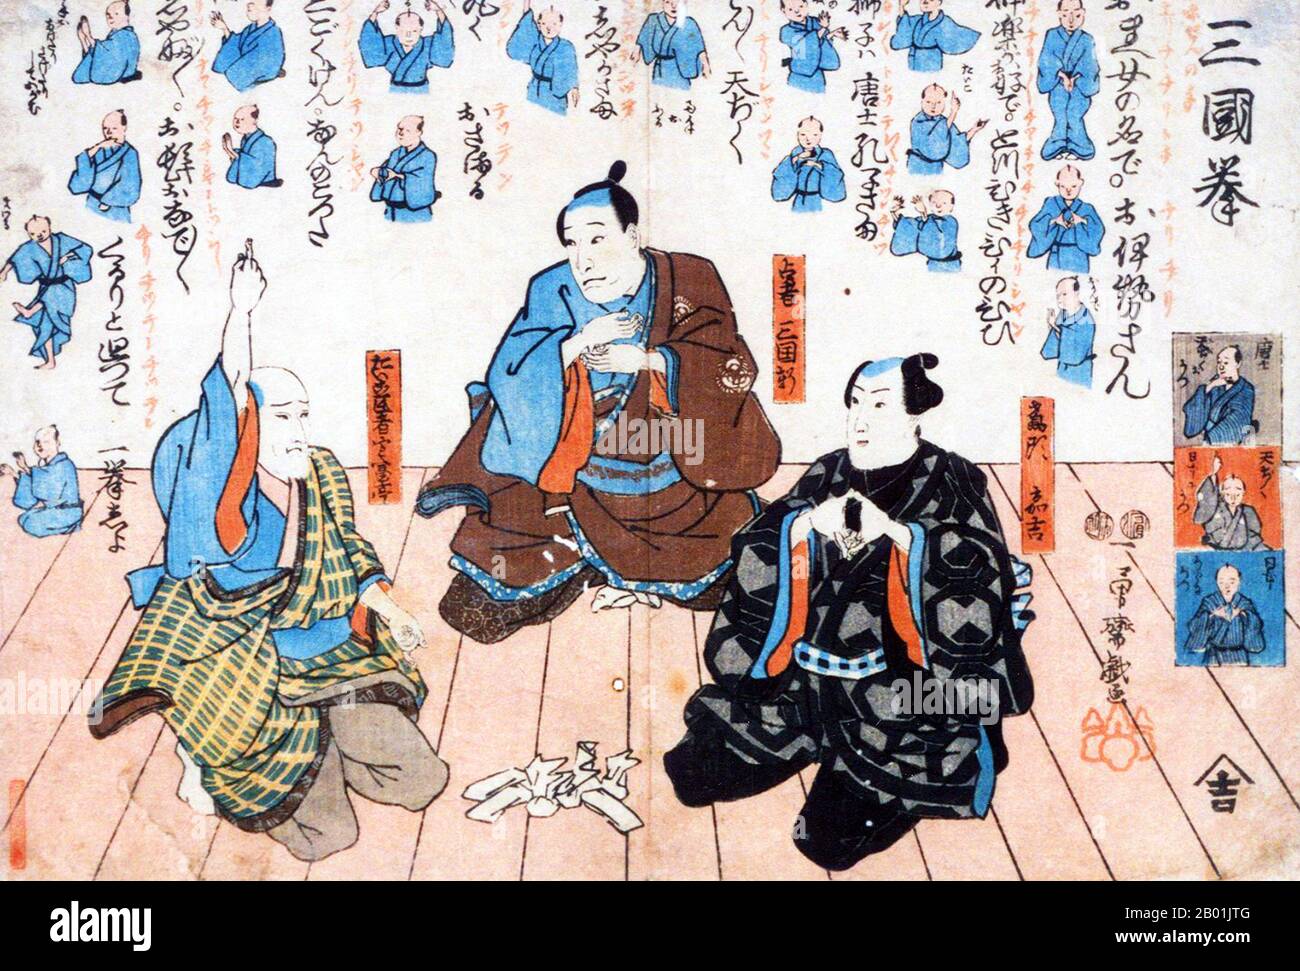 Japon : les acteurs Nakamura Utaemon IV, Ichikawa Kuzô II et Matsumoto Kôshirô VI jouant le jeu Ken. Gravure sur bois Ukiyo-e par Utagawa Kuniyoshi (1 janvier 1797 - 14 avril 1862), 1849. Utagawa Kuniyoshi était l'un des derniers grands maîtres du style japonais ukiyo-e des gravures sur bois et de la peinture. Il est associé à l'école Utagawa. La gamme des sujets préférés de Kuniyoshi comprend de nombreux genres : paysages, belles femmes, acteurs kabuki, chats et animaux mythiques. Il est connu pour ses représentations des batailles de samouraï et de héros légendaires. Banque D'Images